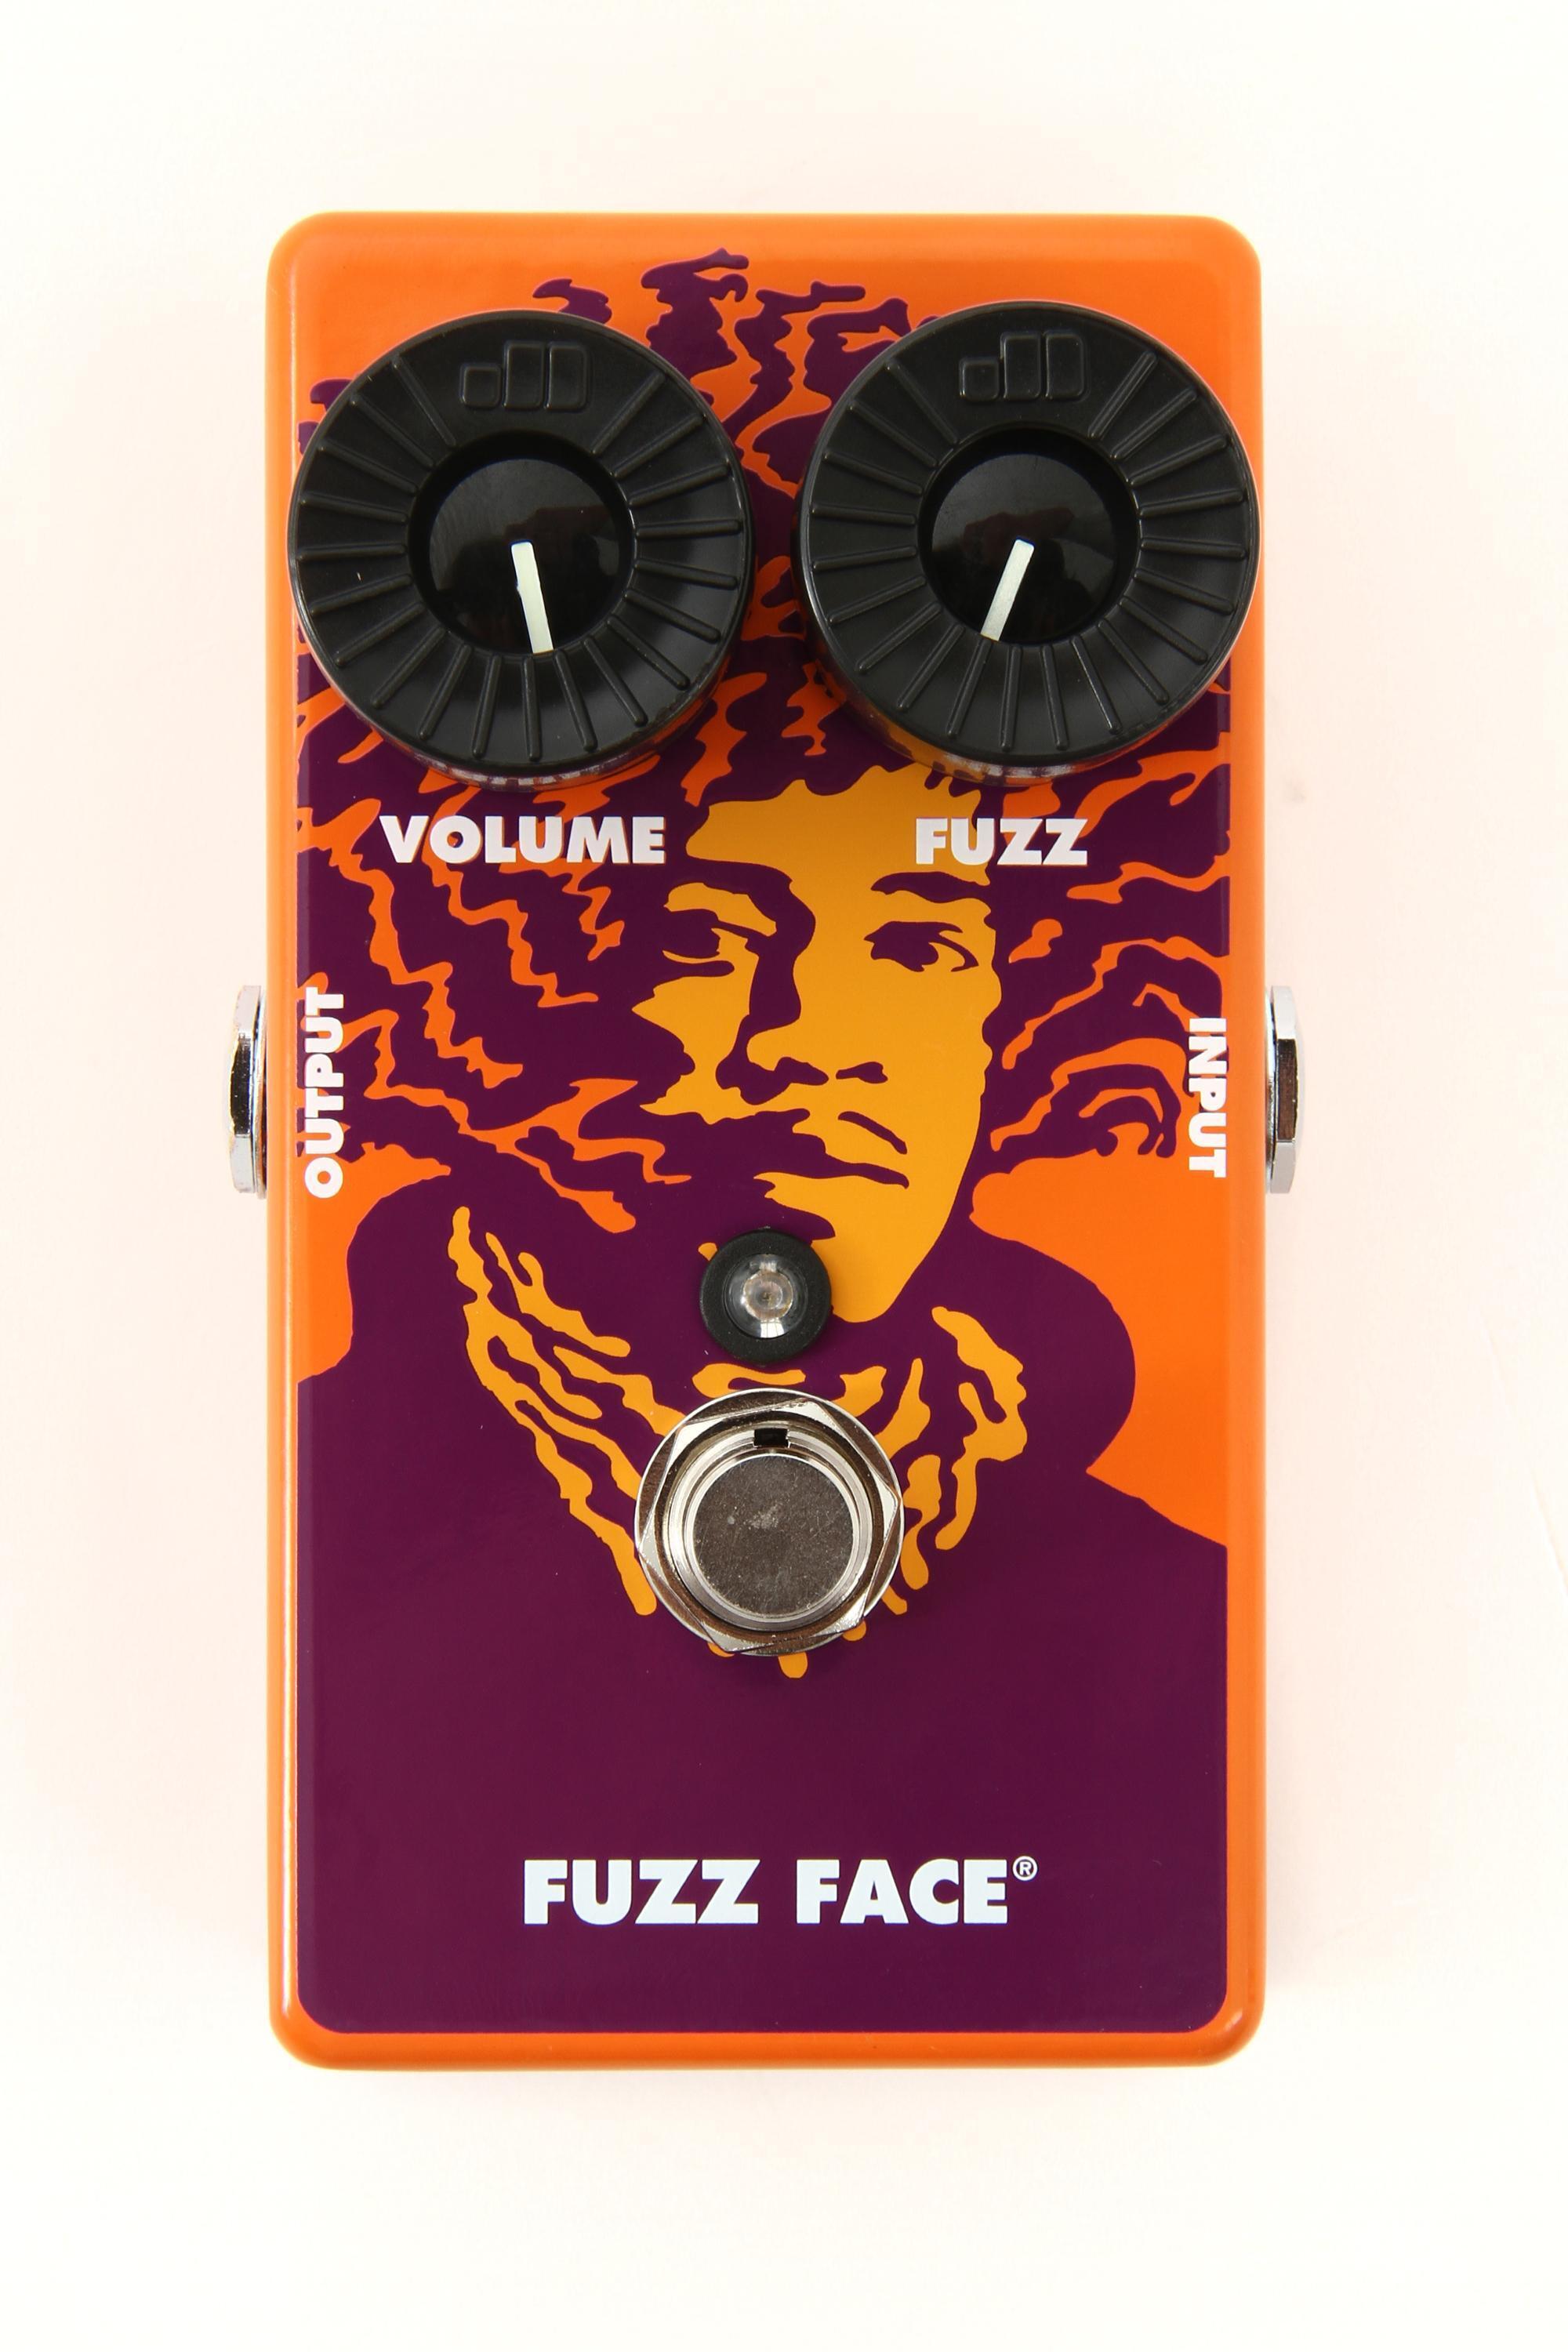 MXR Jimi Hendrix 70th Anniversary Tribute Series Fuzz Face